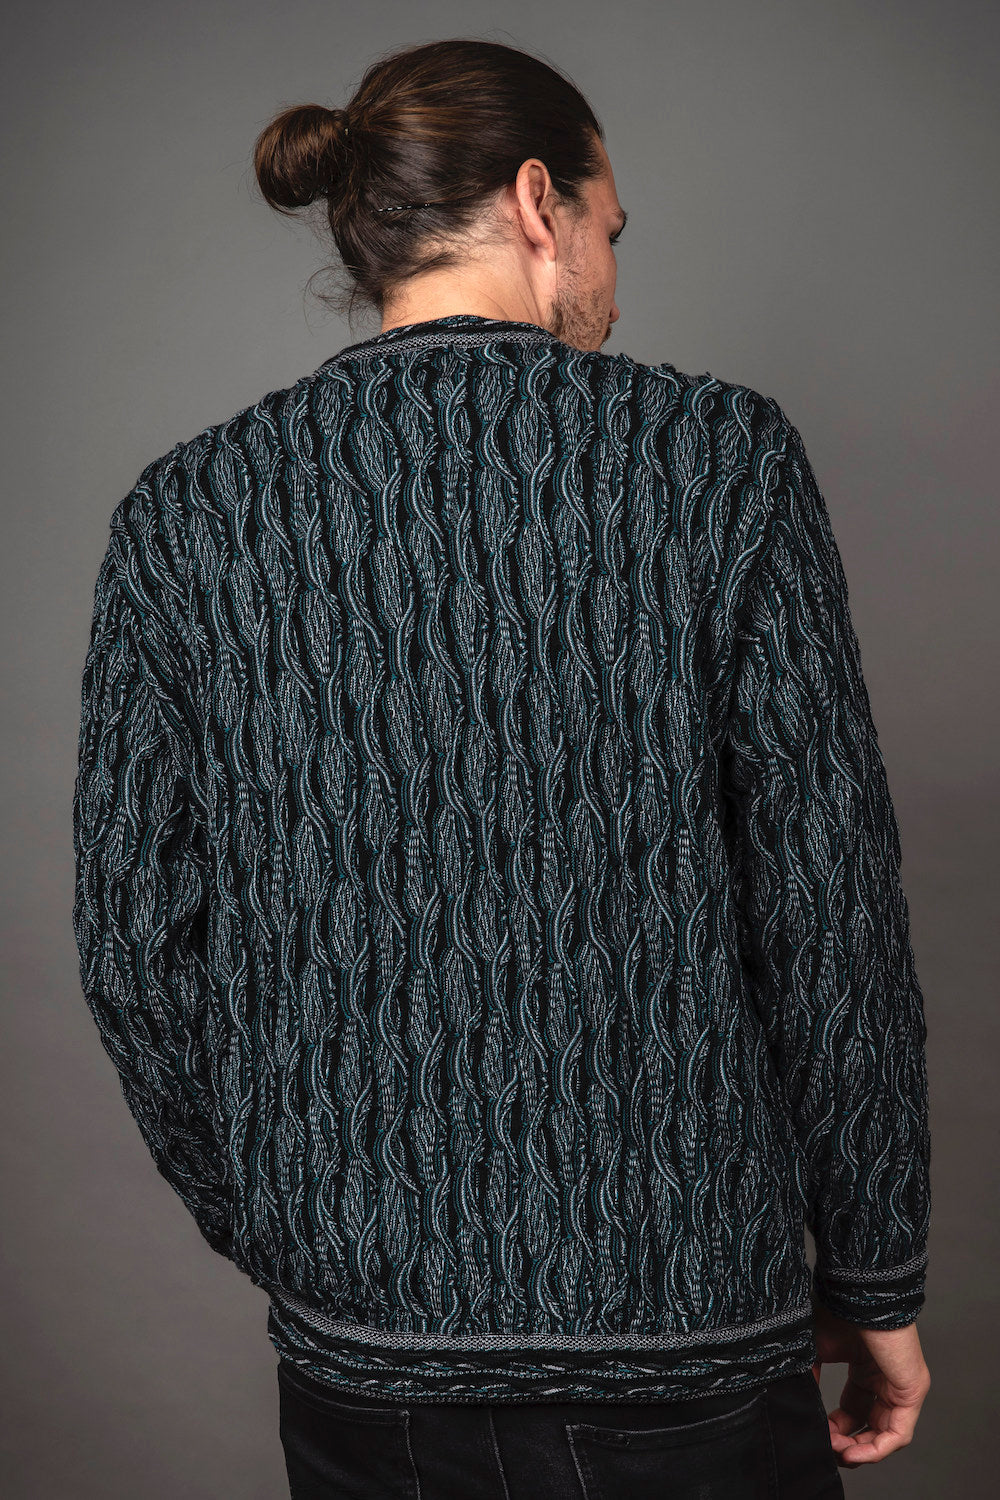 Wave - Black Sweater Jumper Merino Wool 3D Geccu Knitwear (L Only)